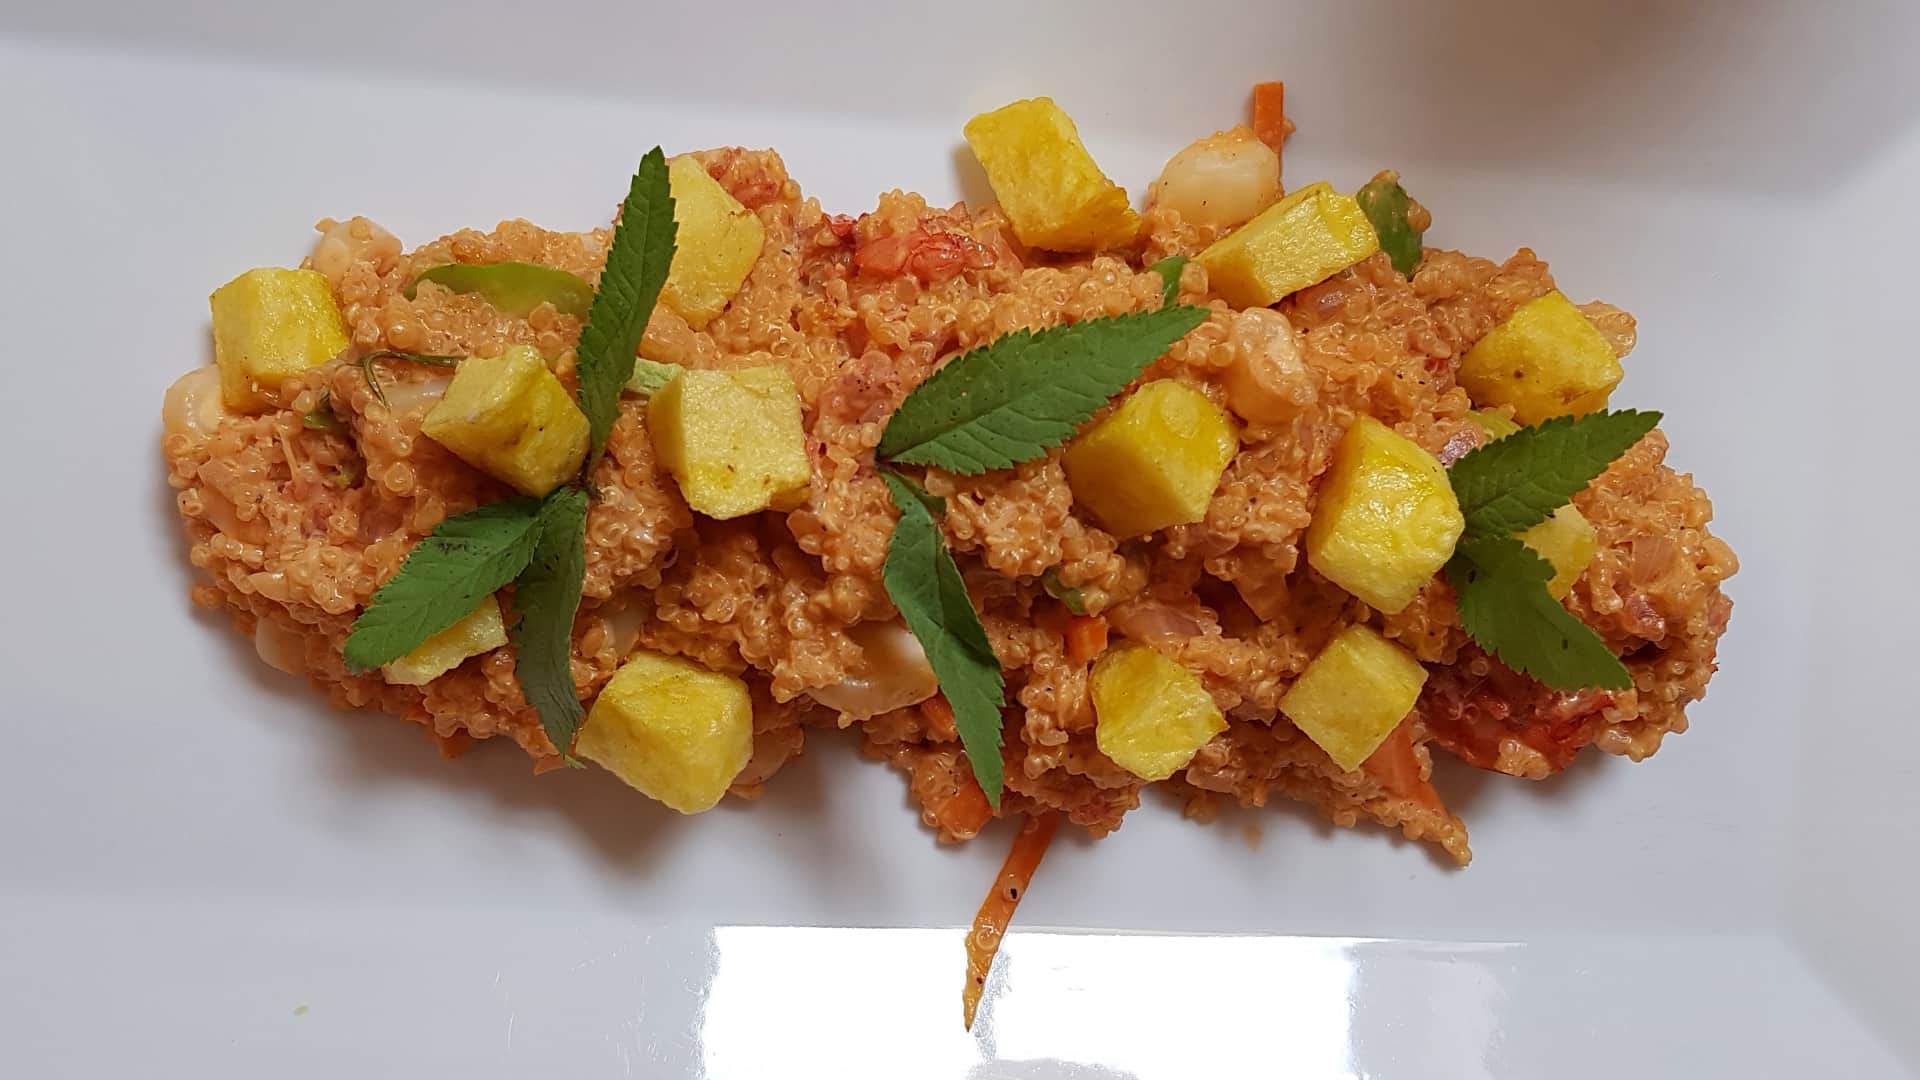 11Chupe seco consisting of quinoa, corn and potato | Responsible Travel Peru